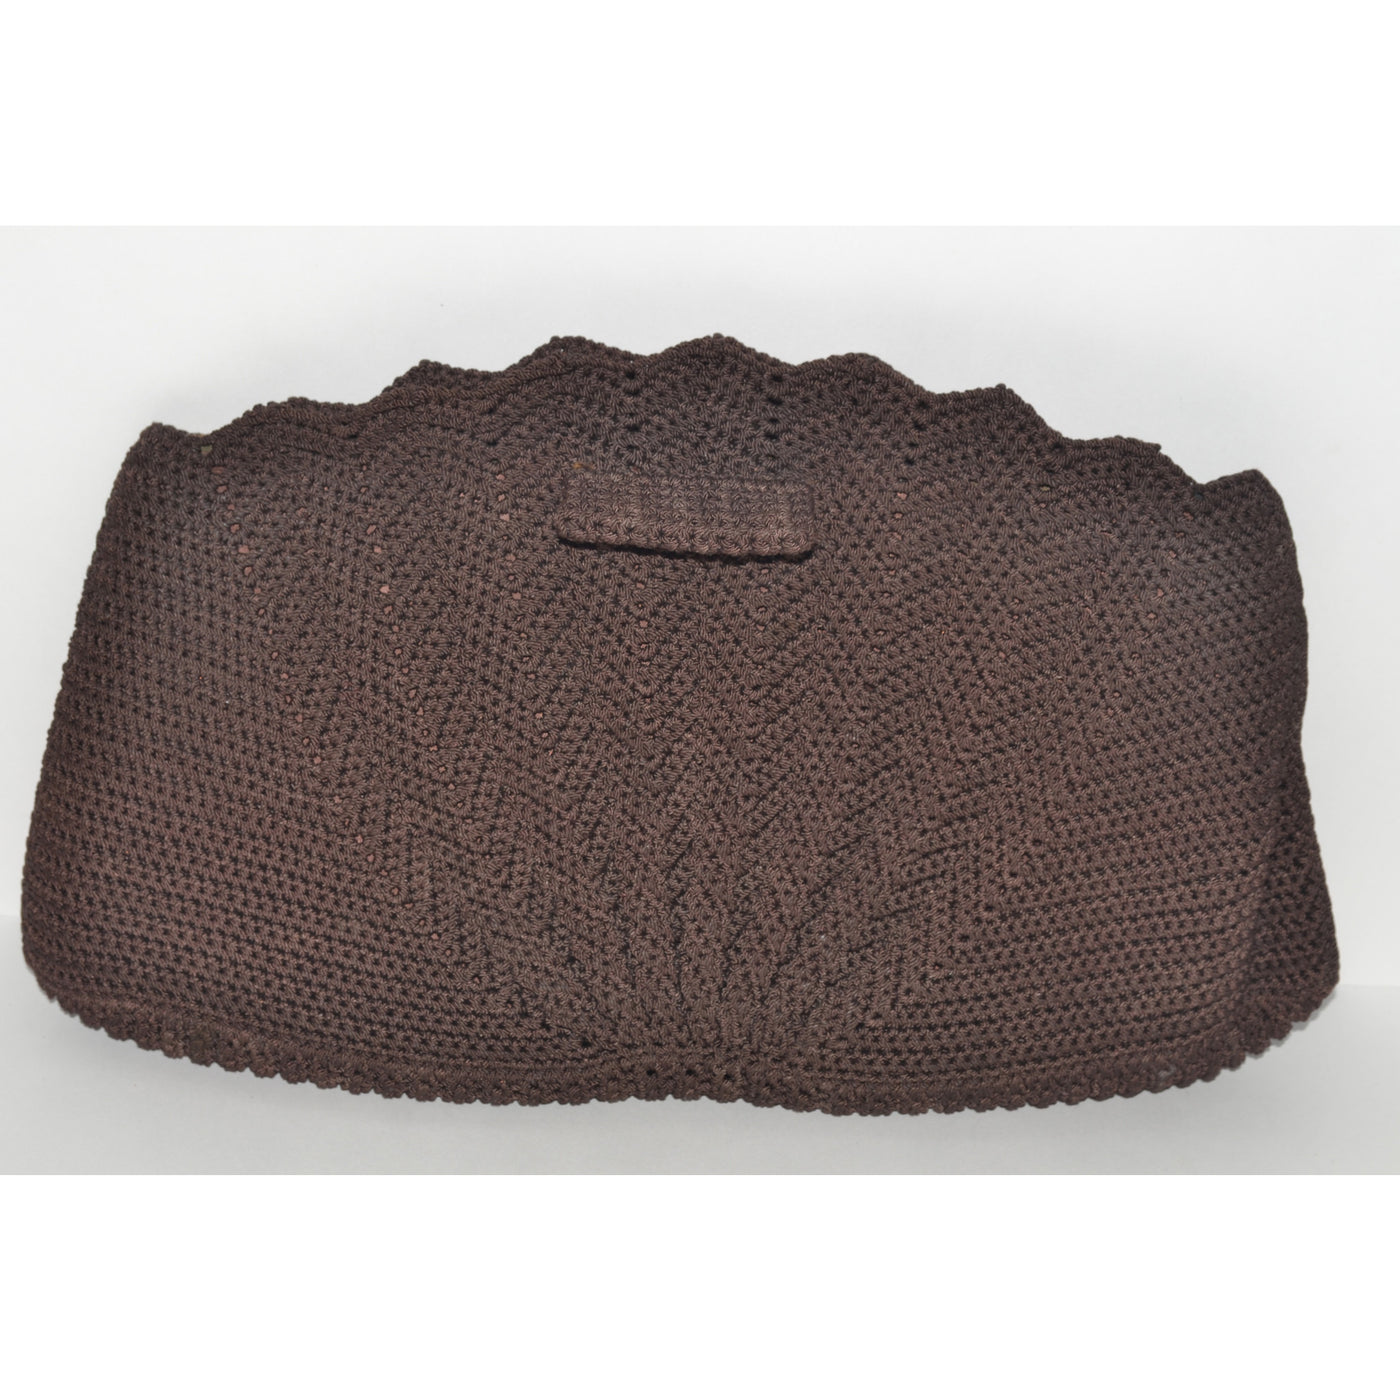 Vintage Brown Crochet Fan Clutch Purse